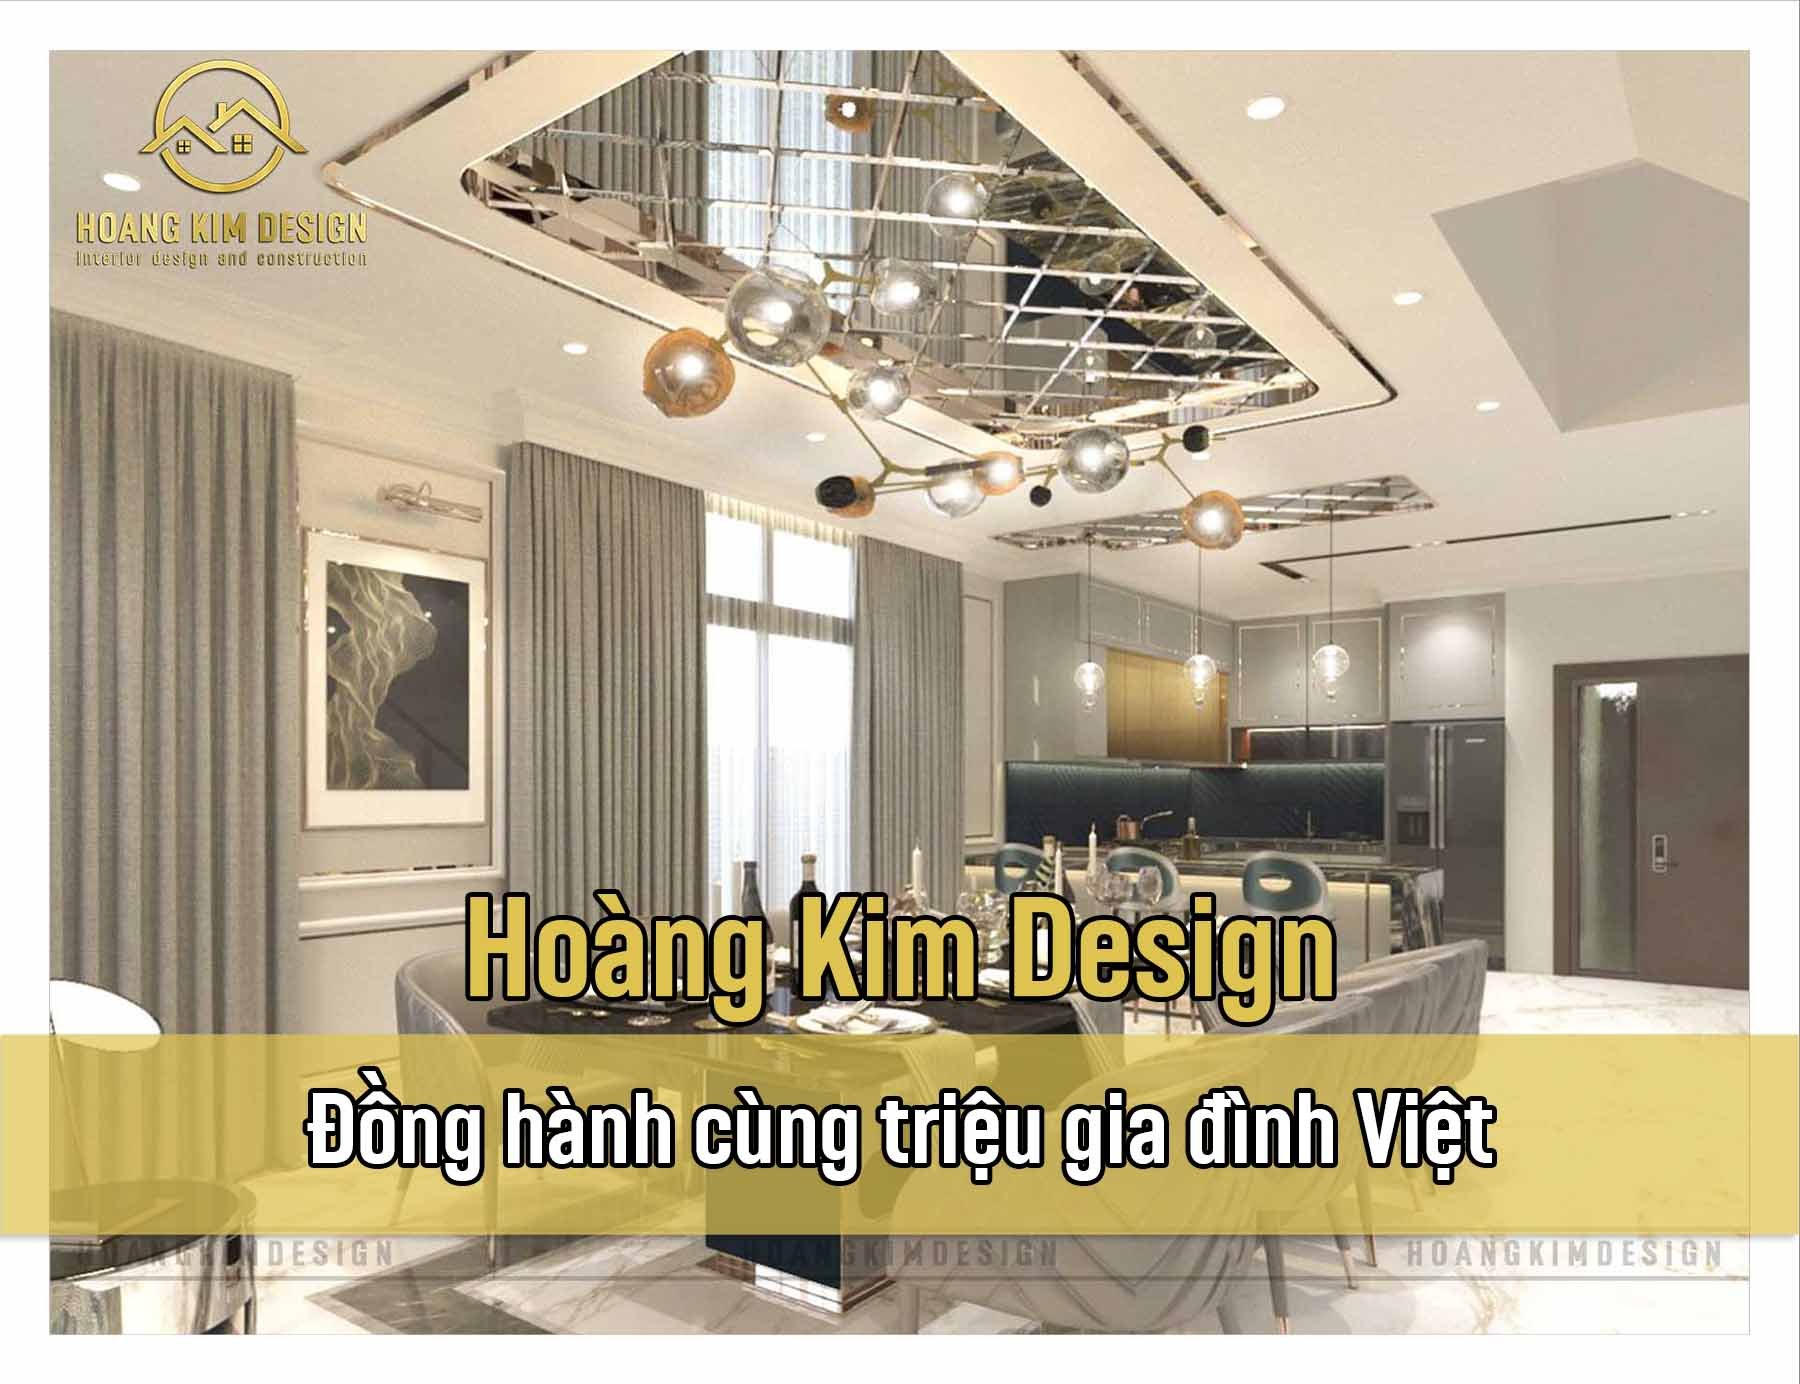 Hoàng Kim Design – đồng hành cùng triệu ngôi nhà Việt